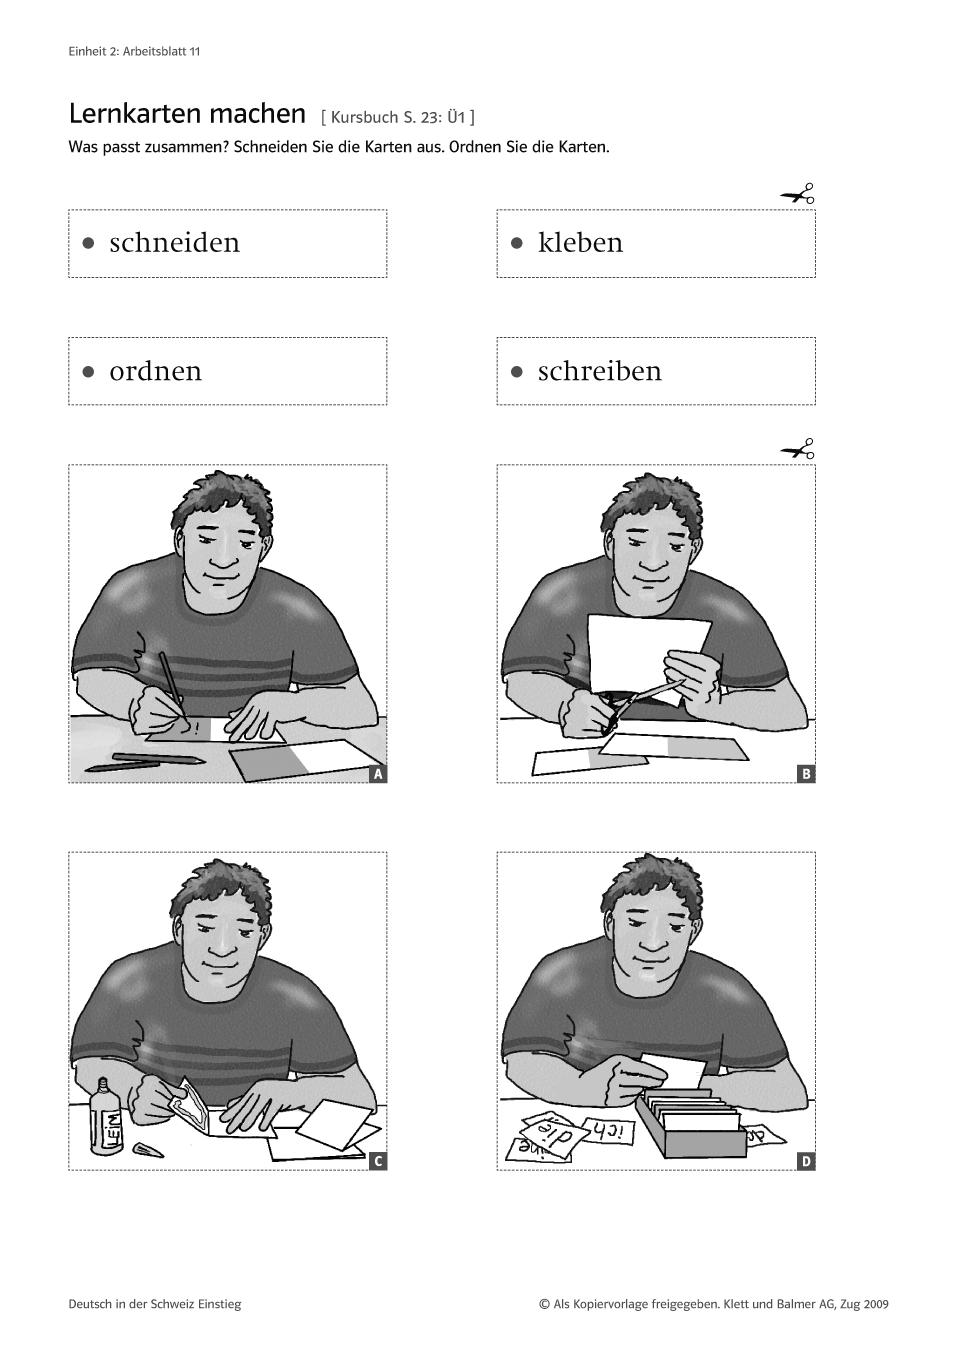 11 Lernkarten machen 12 Lernkarten mit Fragen und Antworten (Blatt